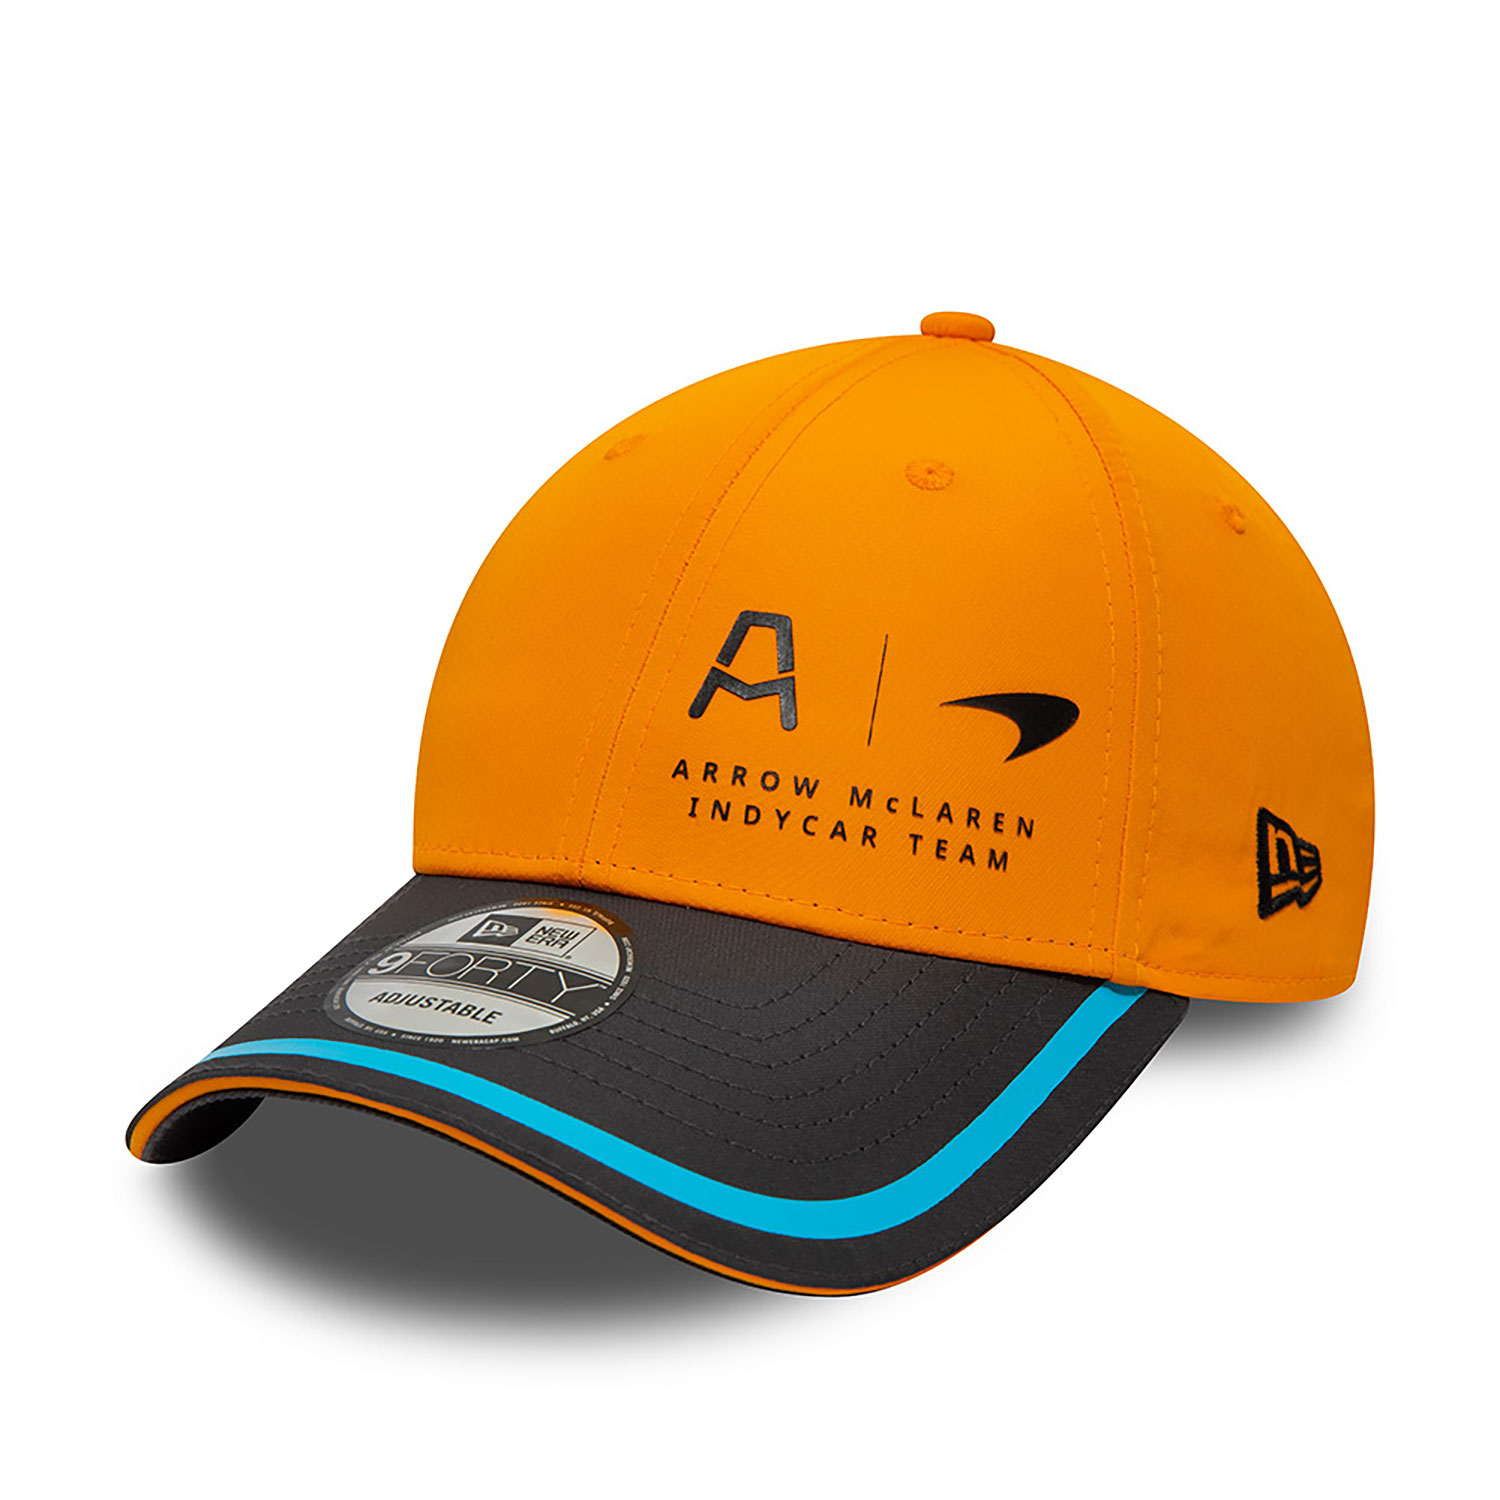 McLaren Racing Indycar Team Orange 9FORTY Adjustable Cap